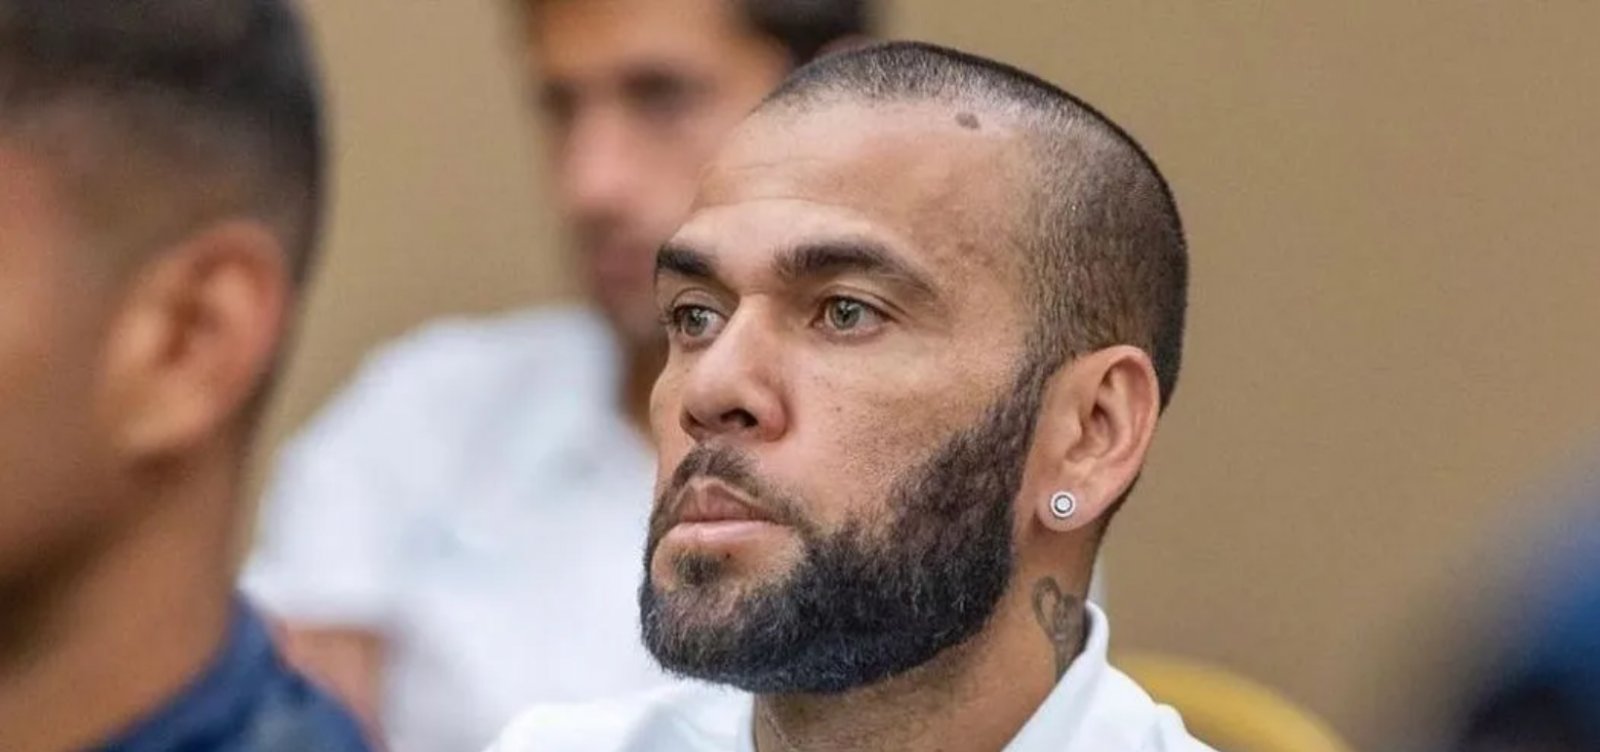 Julgamento de Daniel Alves acontecerá em Barcelona com 3 dias de duração e 28 testemunhas